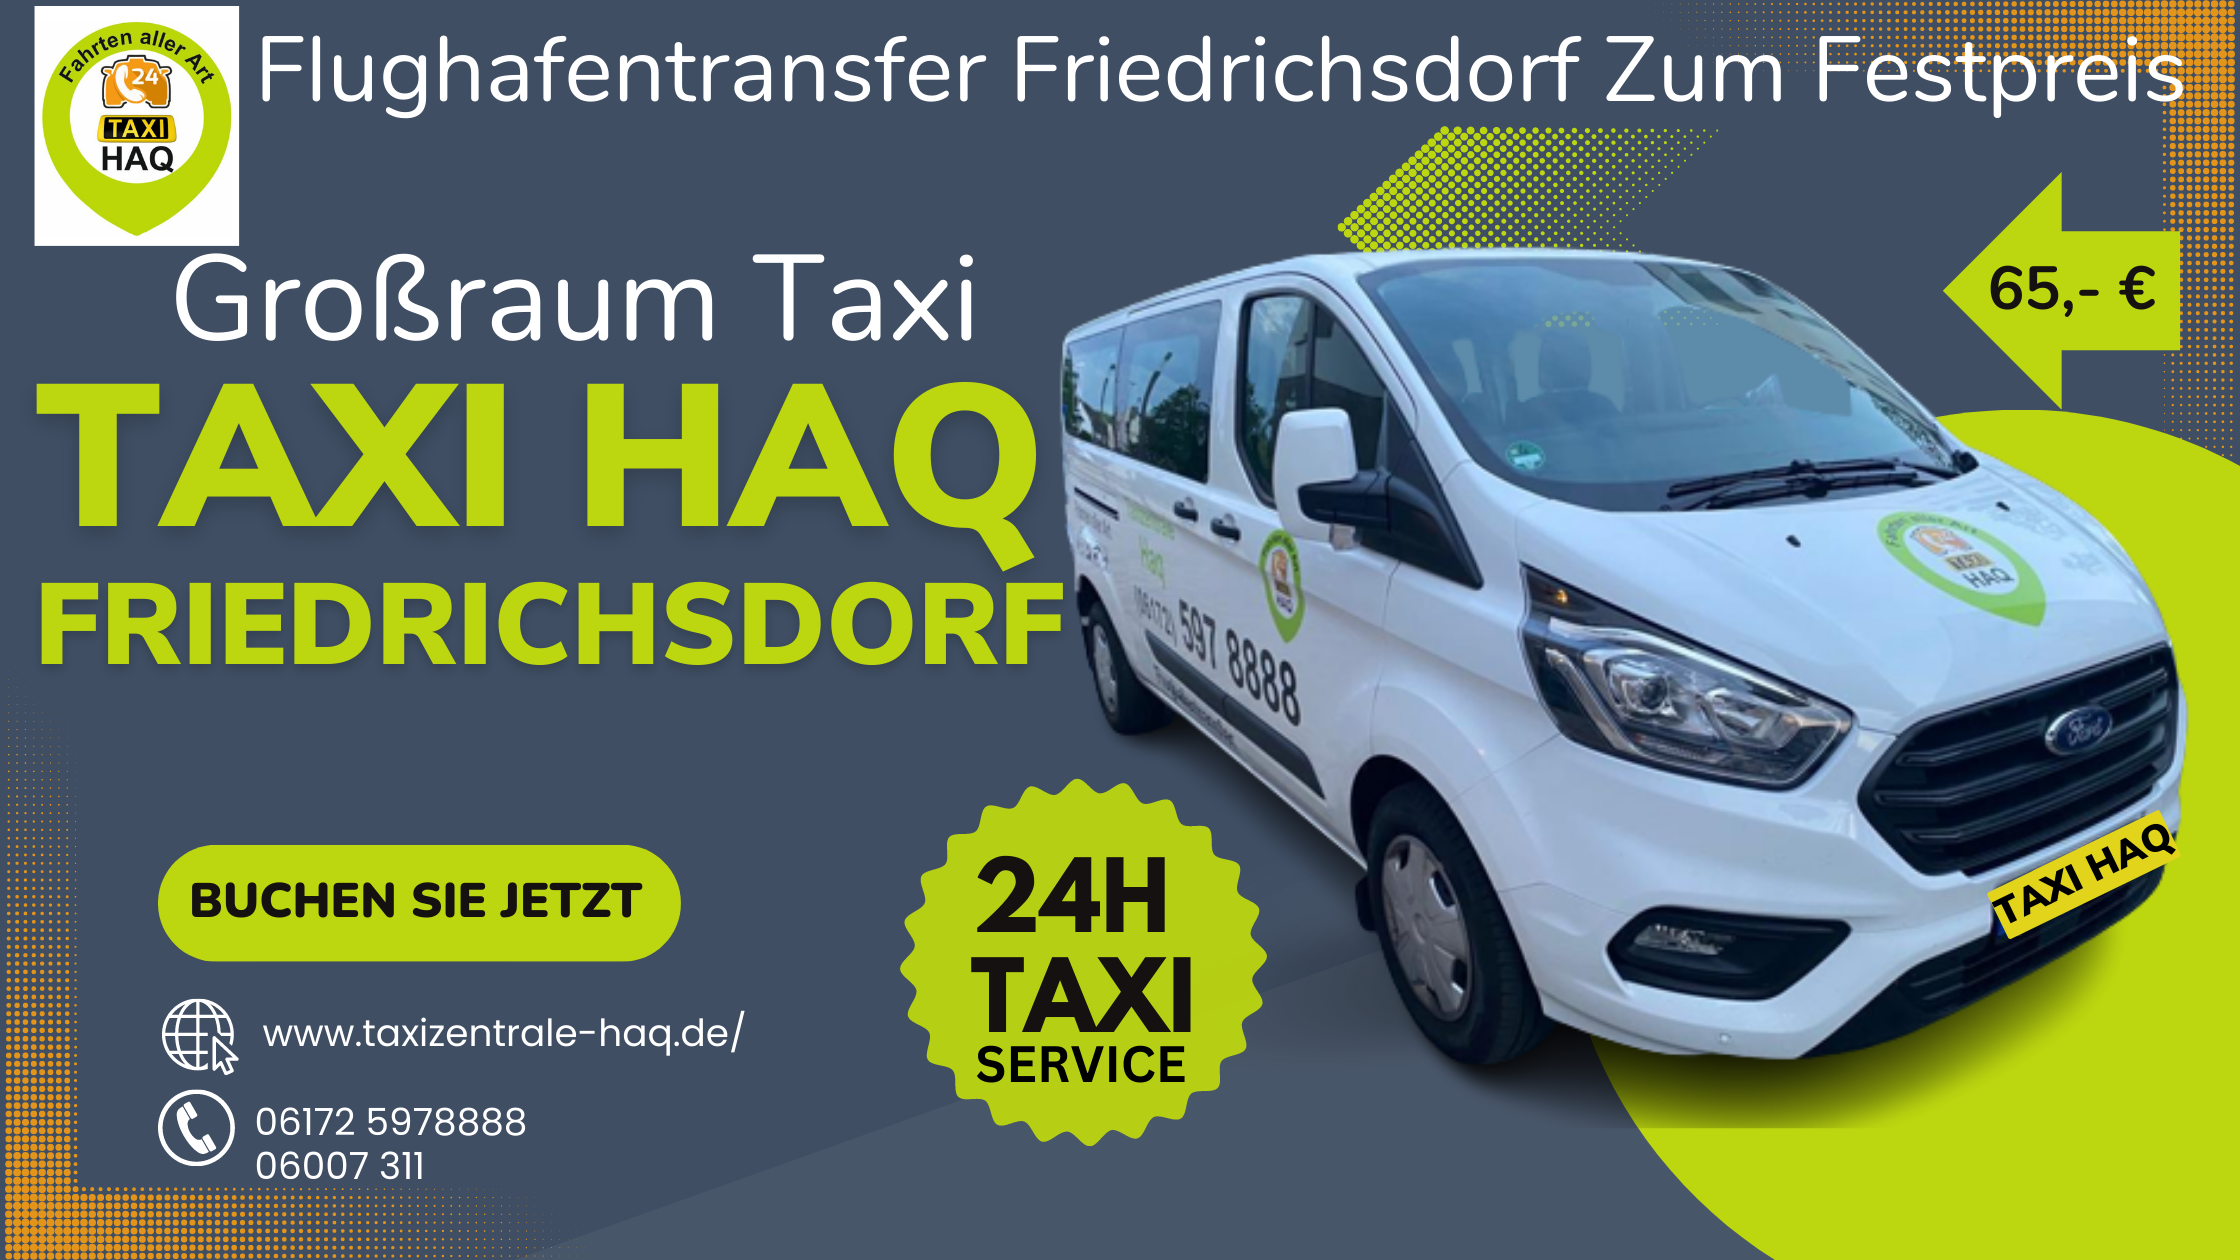 Taxi Haq-Großraum-Taxi-Banner